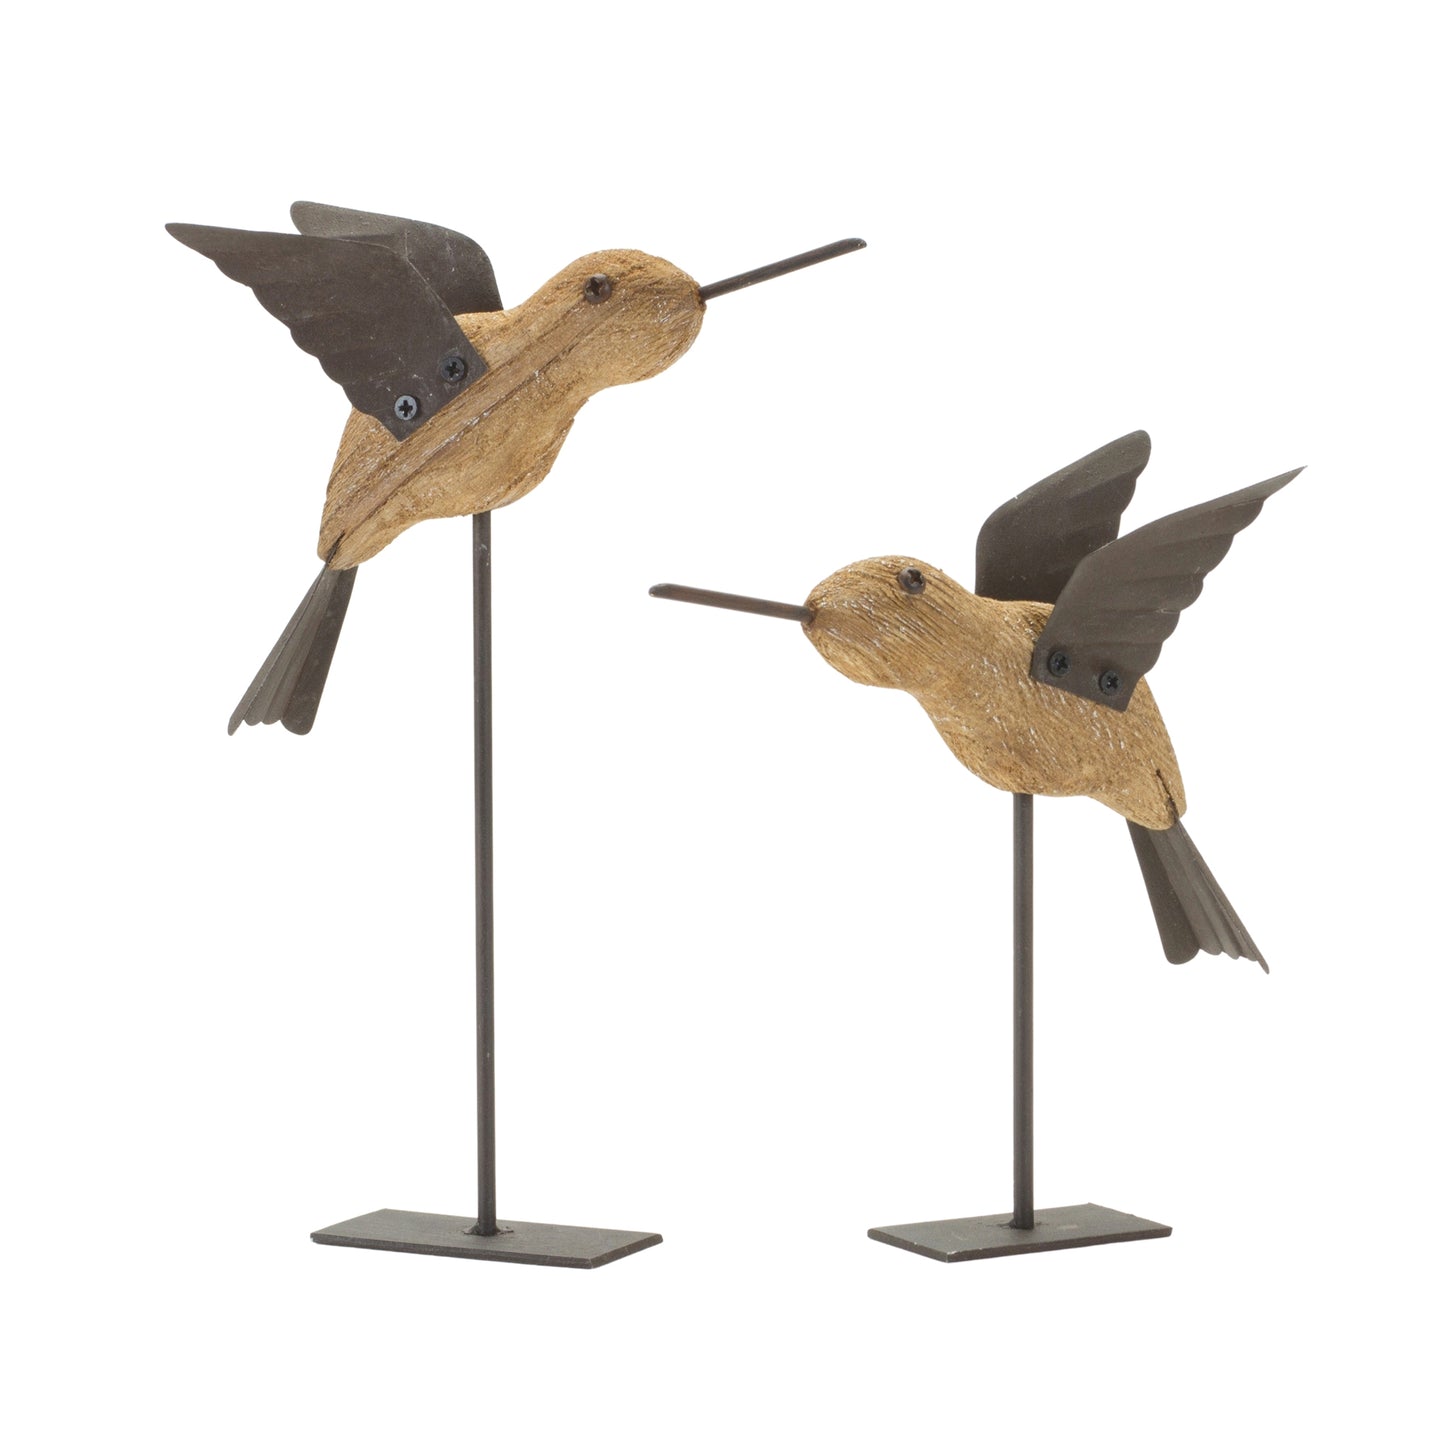 Bird on Stake (Set of 2) 5"L x 6.25"H, 5"L x 8"H Wood/Iron